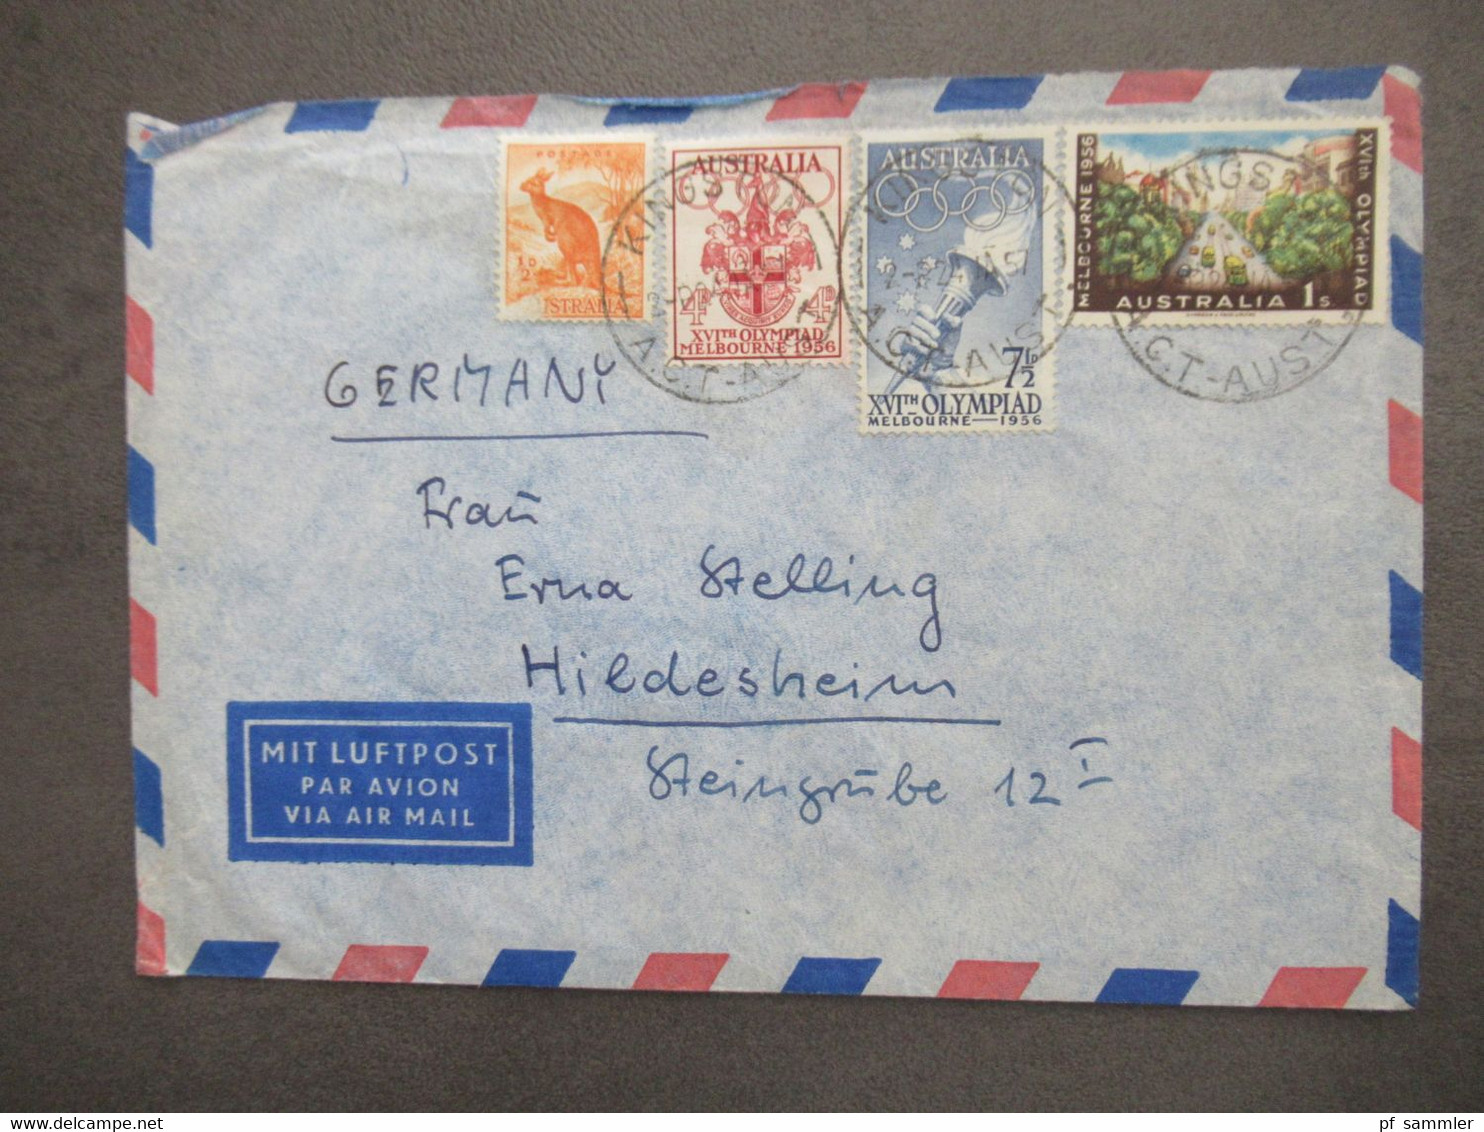 Australien Marken Von 1956 Mit Luftpost Air Mail Kingston - Hildesheim Aulandsbrief - Cartas & Documentos